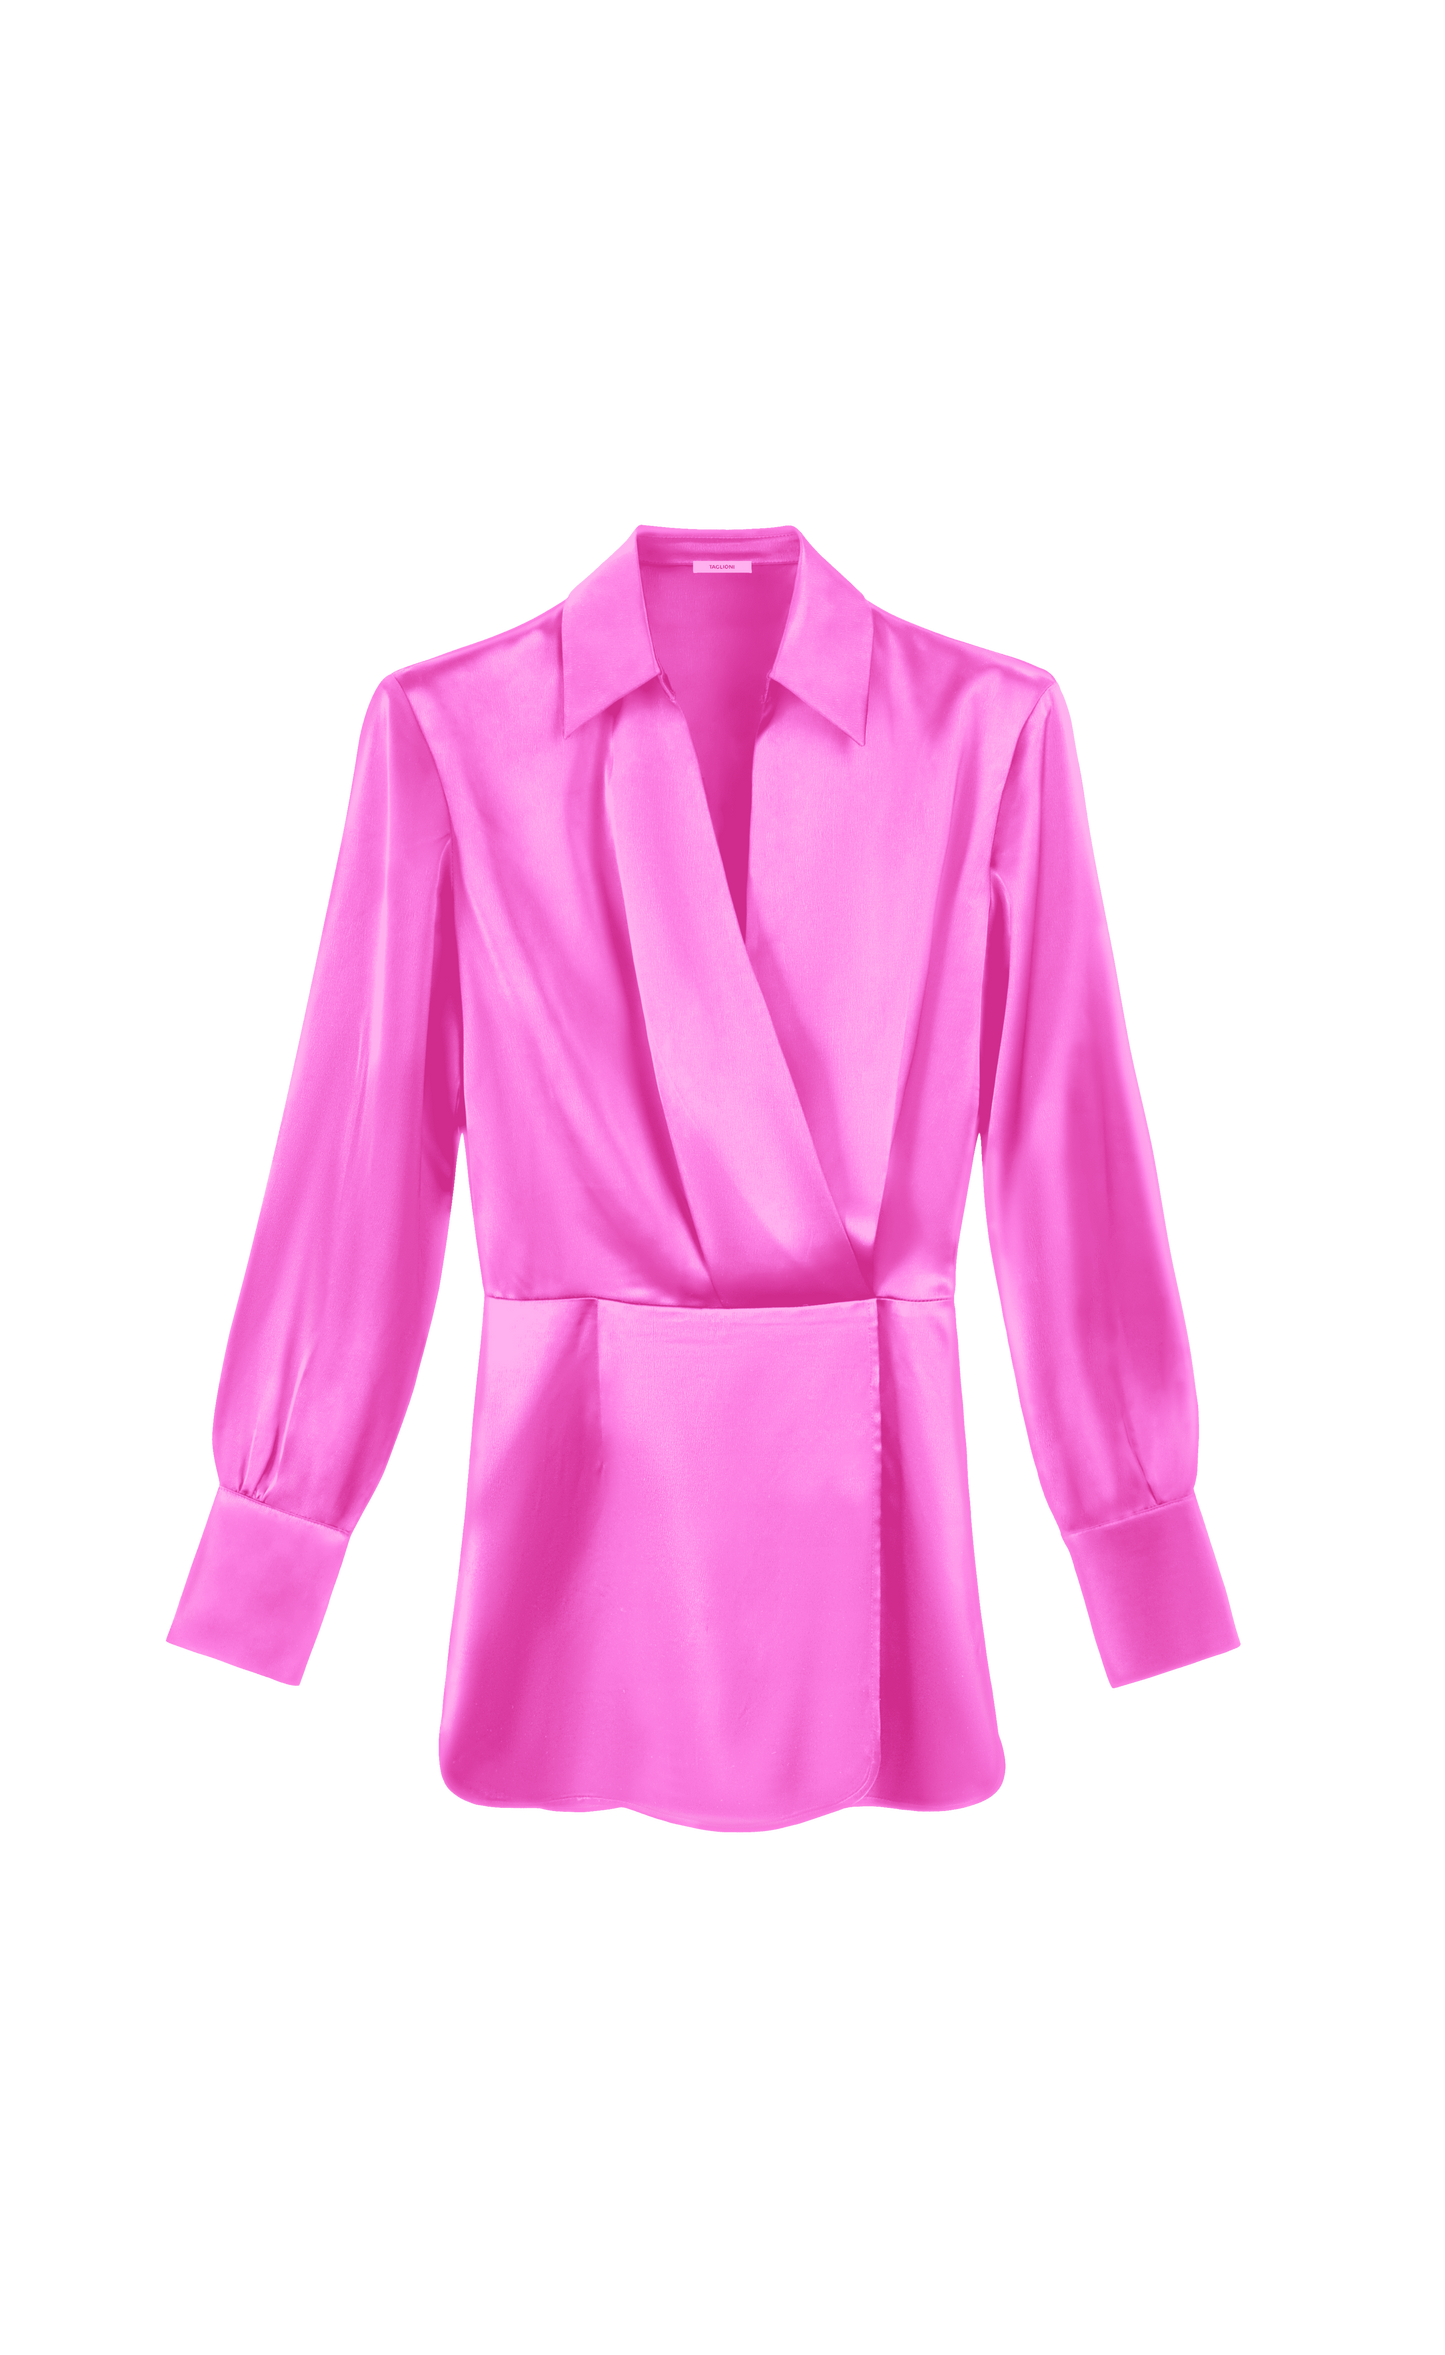 TAGLIONI Satin Shirt Dress in Pink